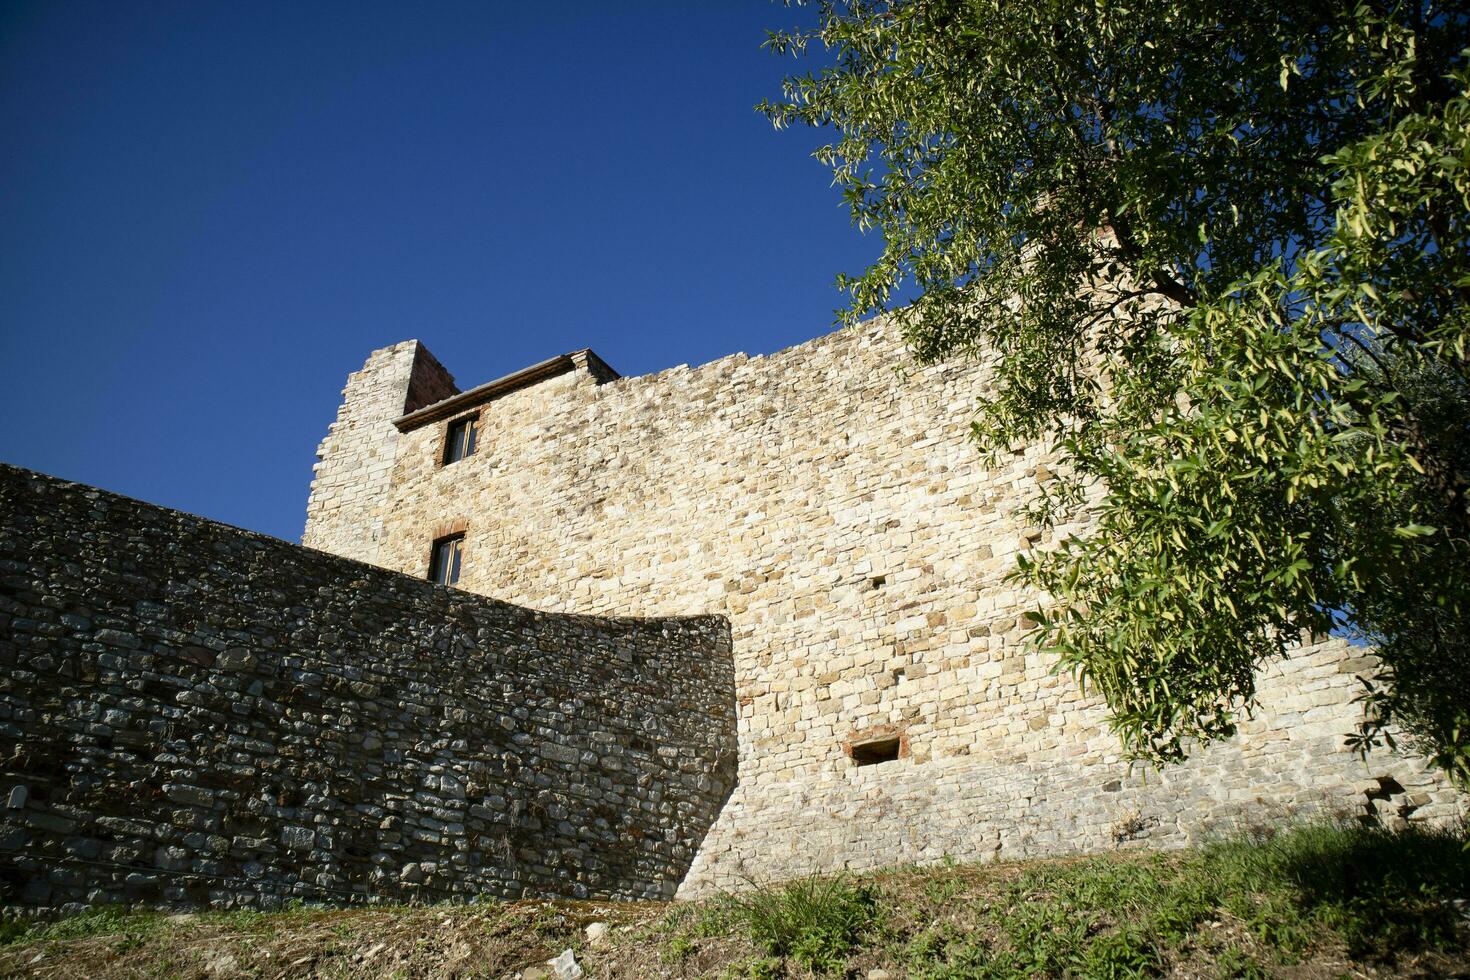 The small fortress of Suvereto Tuscany Italy photo